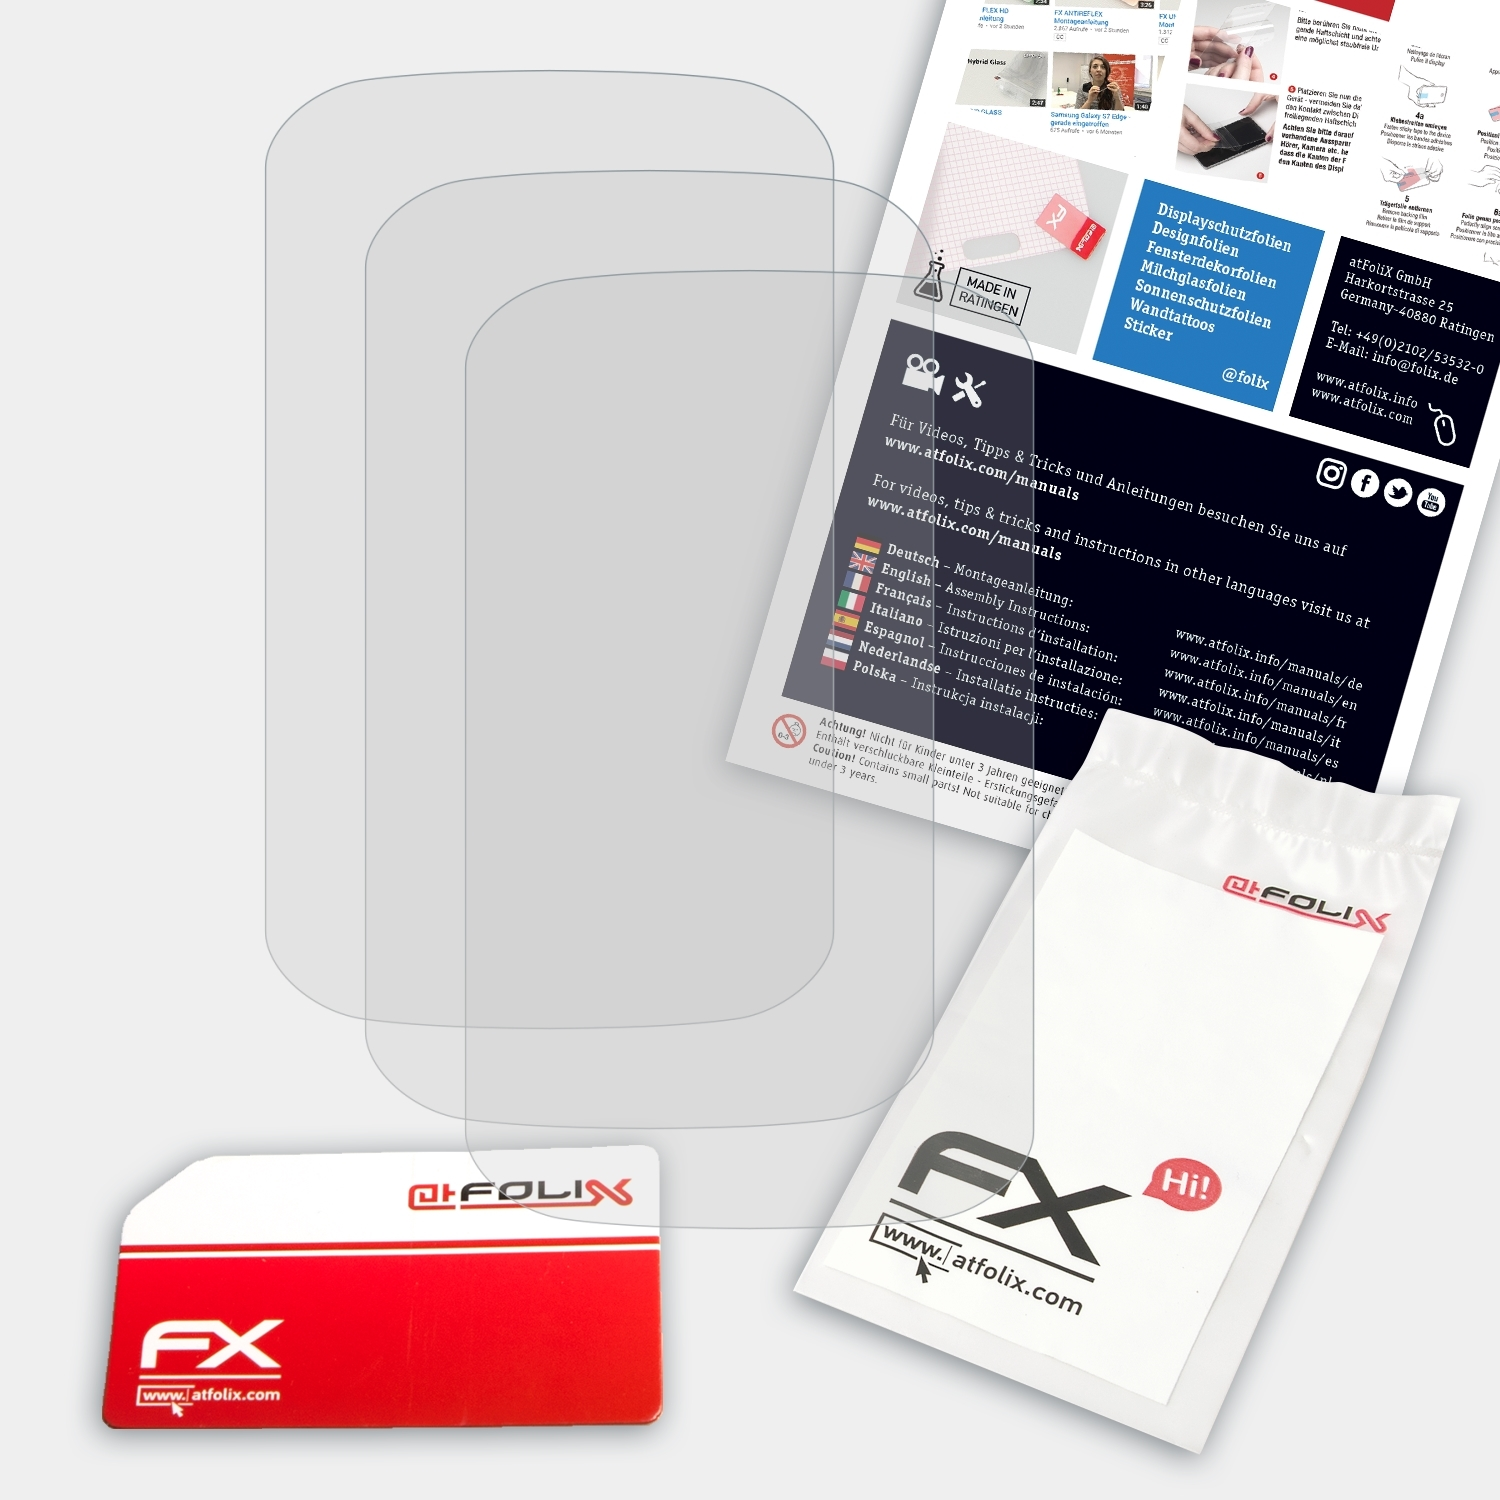 ATFOLIX 3x FX-Antireflex Displayschutz(für Explore Garmin Edge 1000)